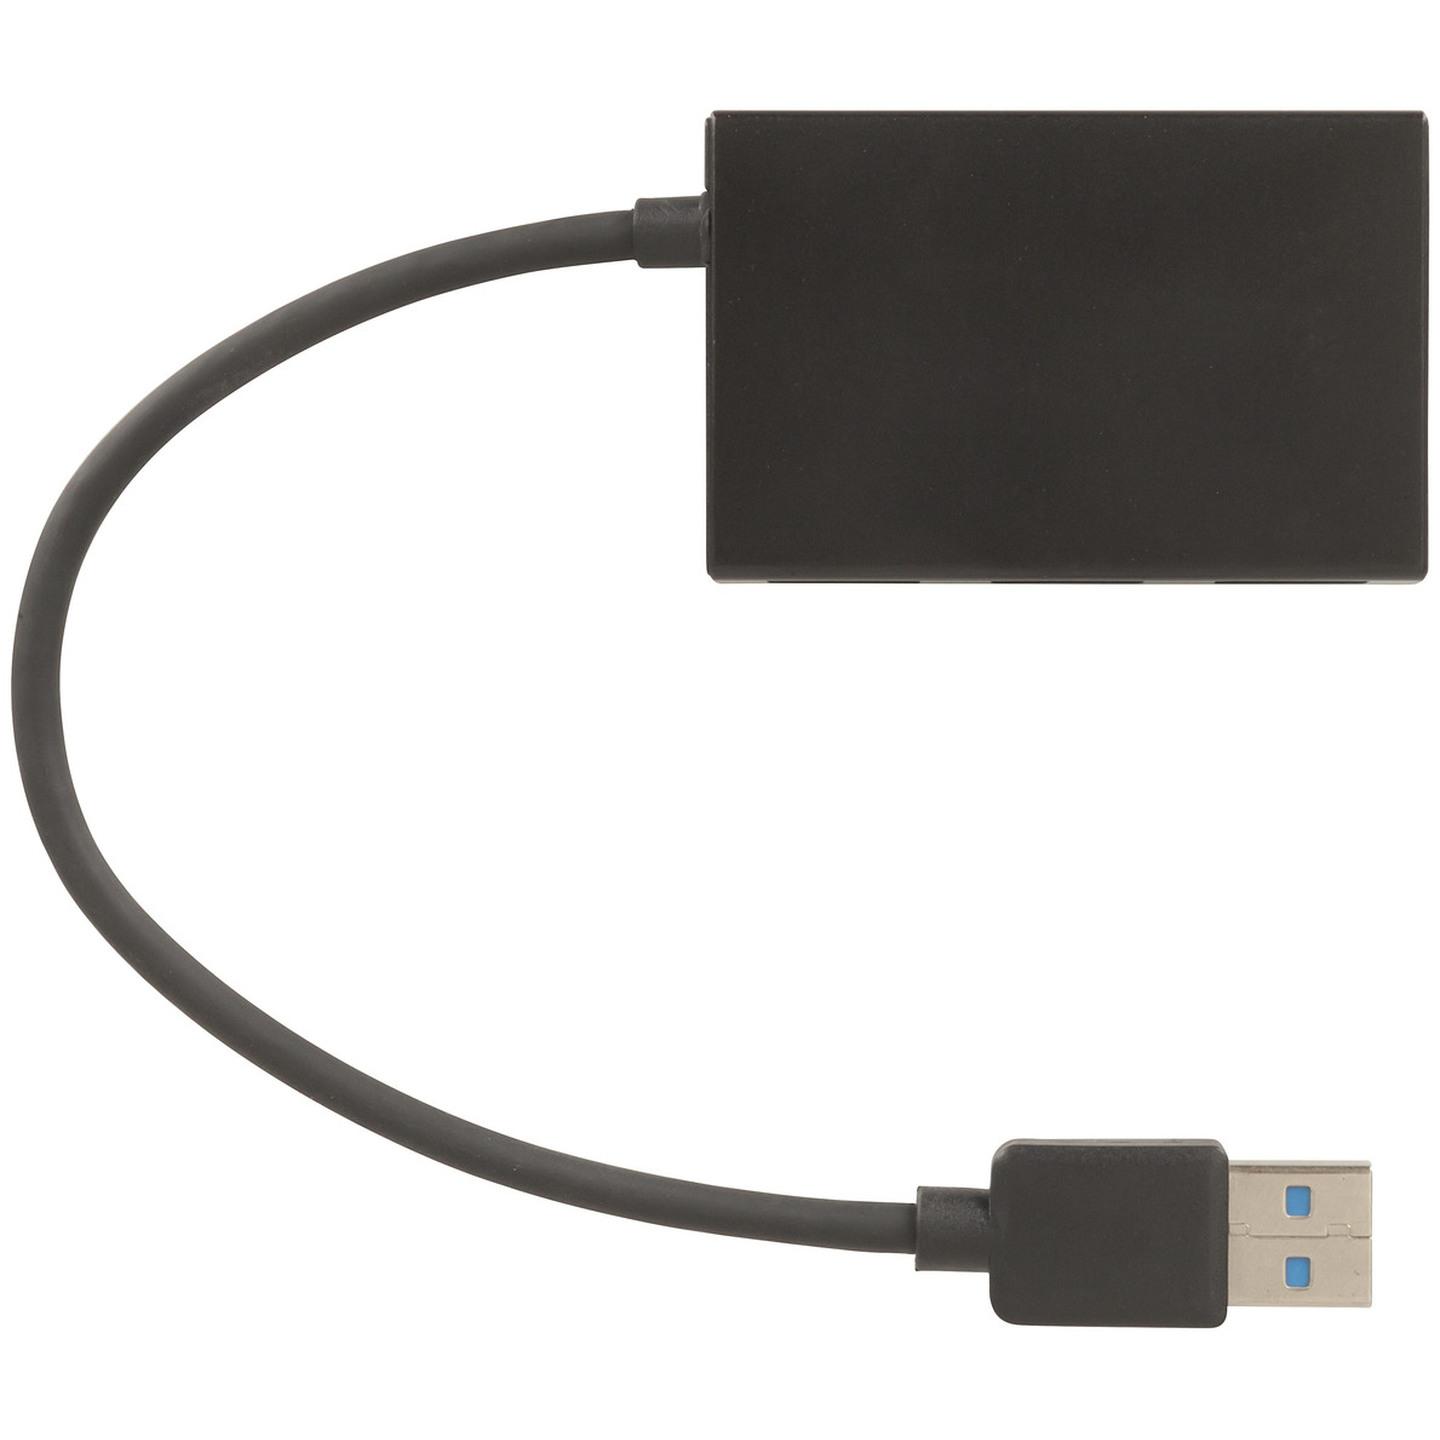 USB 3.0 4 Port Mini Hub Black